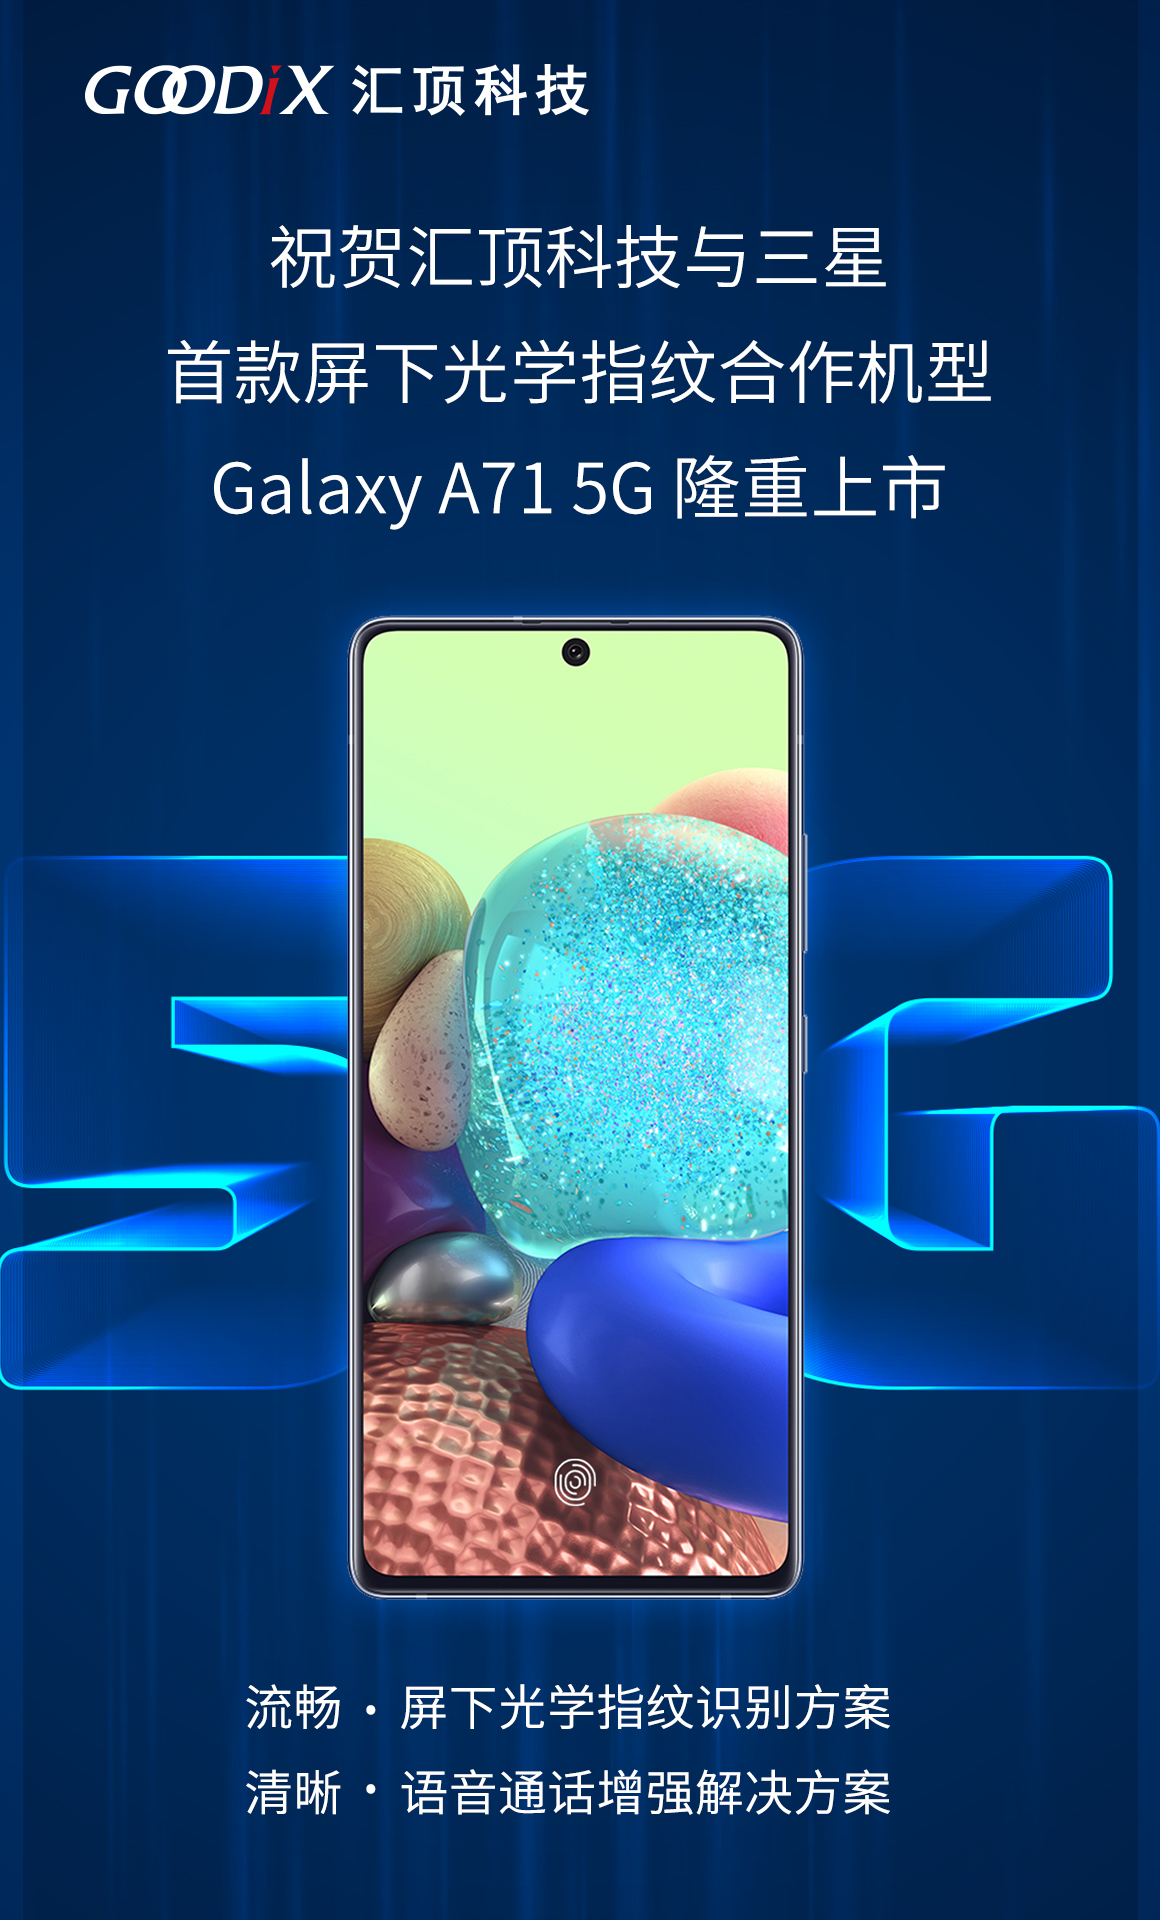 三星 Galaxy A71 CN.jpg